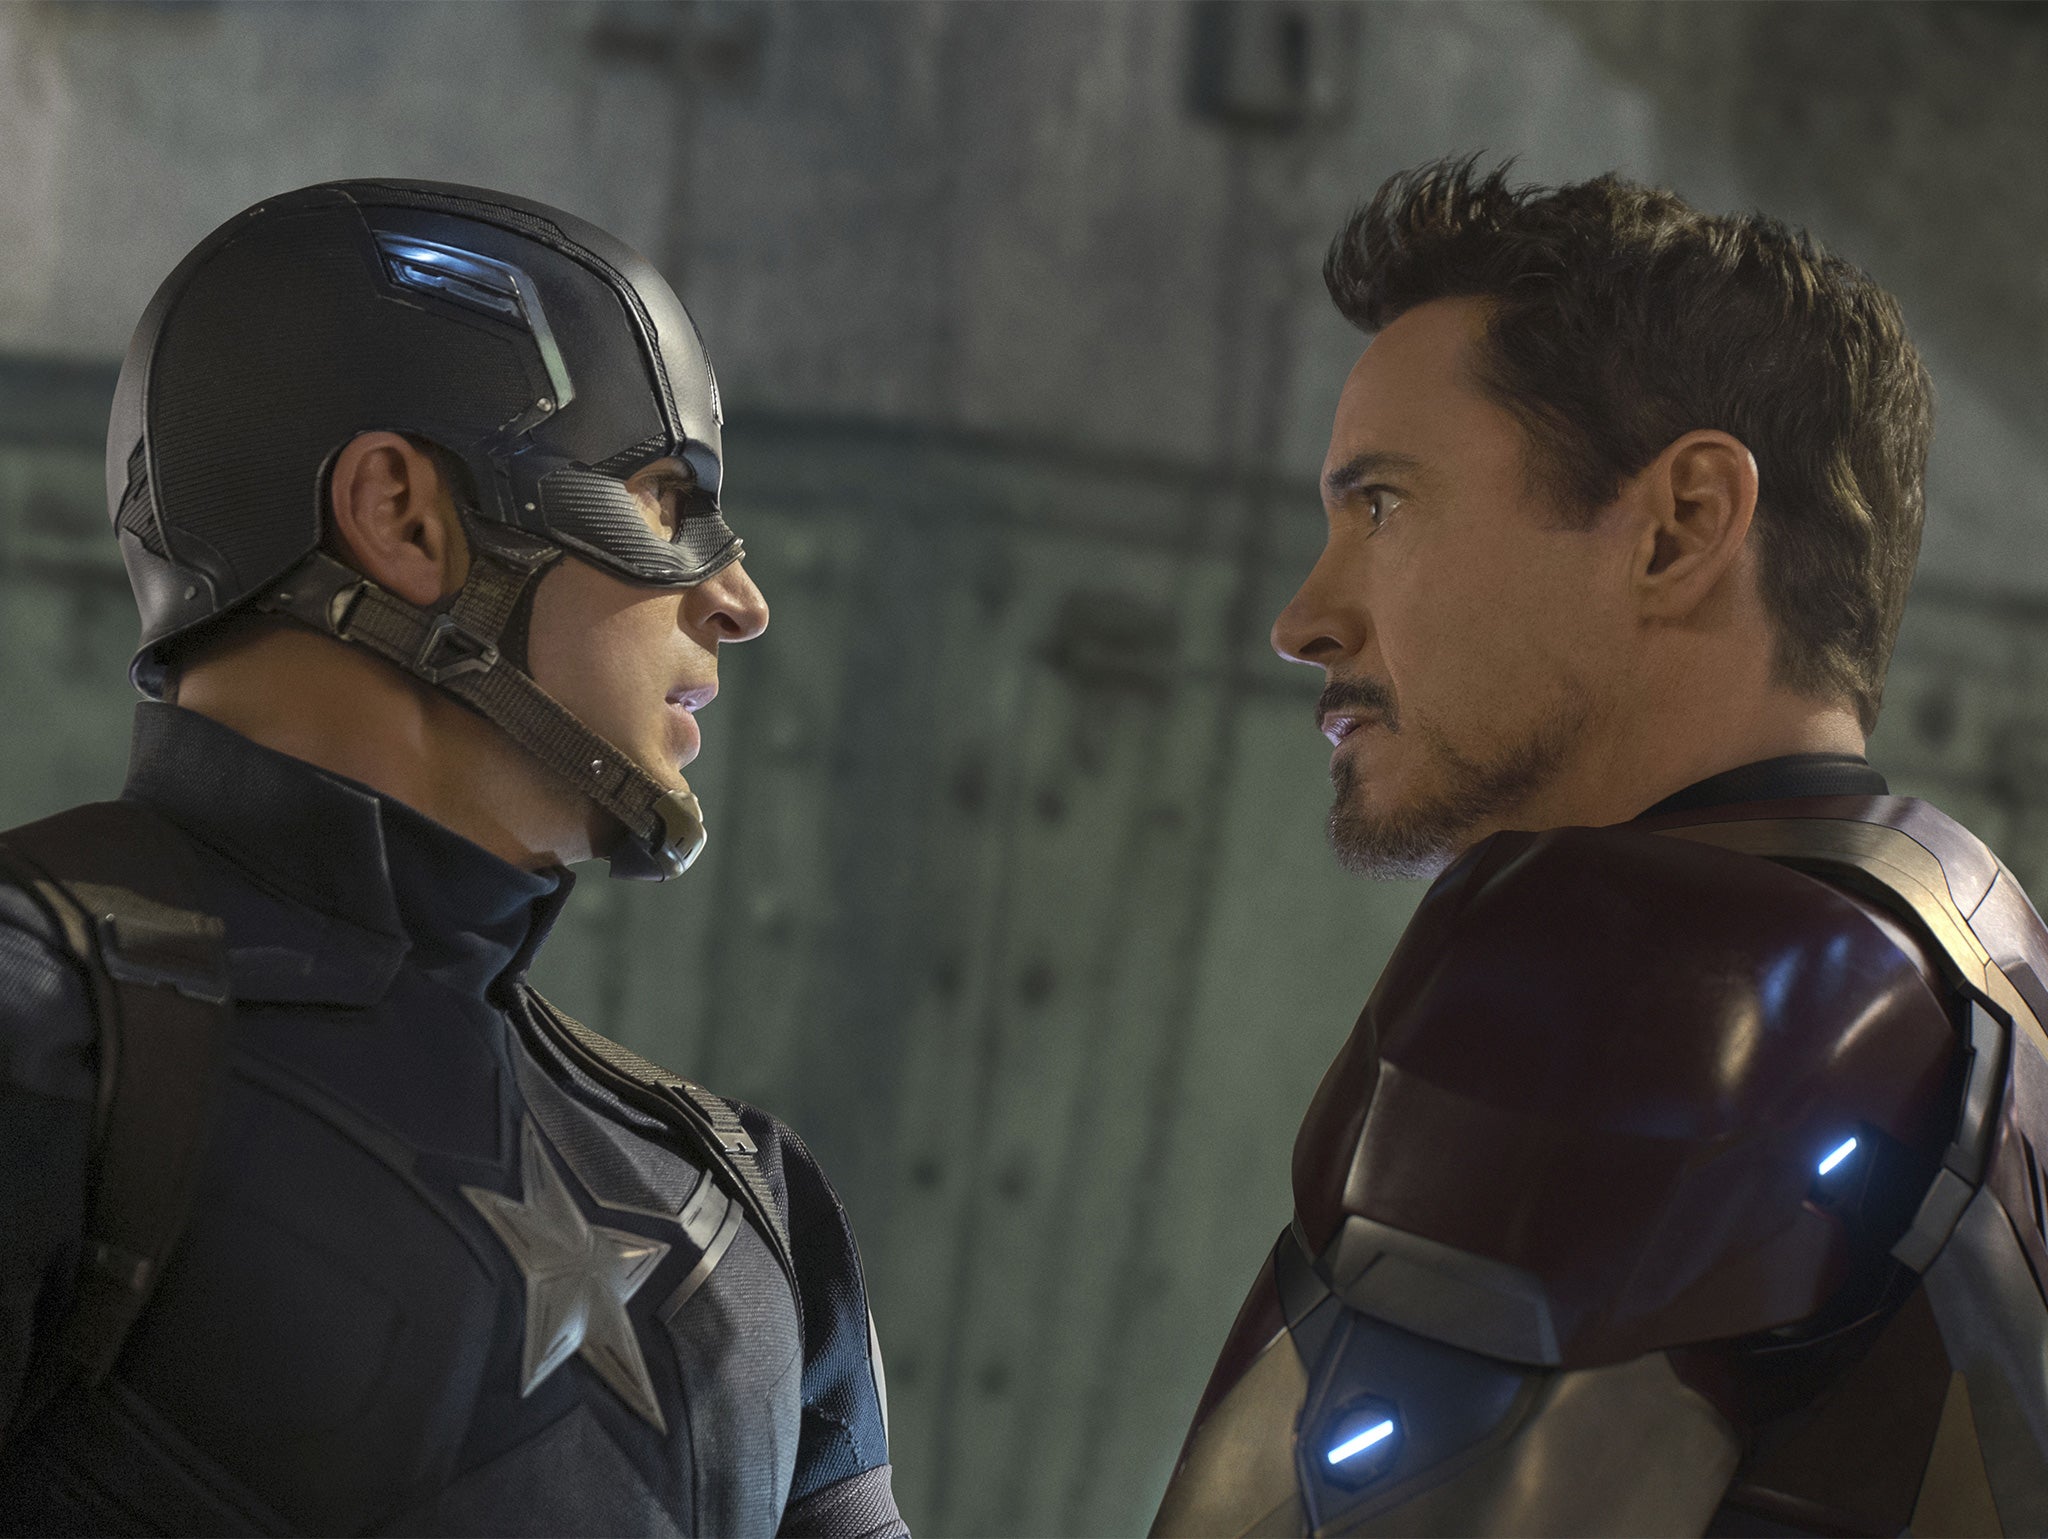 Chris Evans and Robert Downey Jr in ‘Captain America: Civil War’ (Re